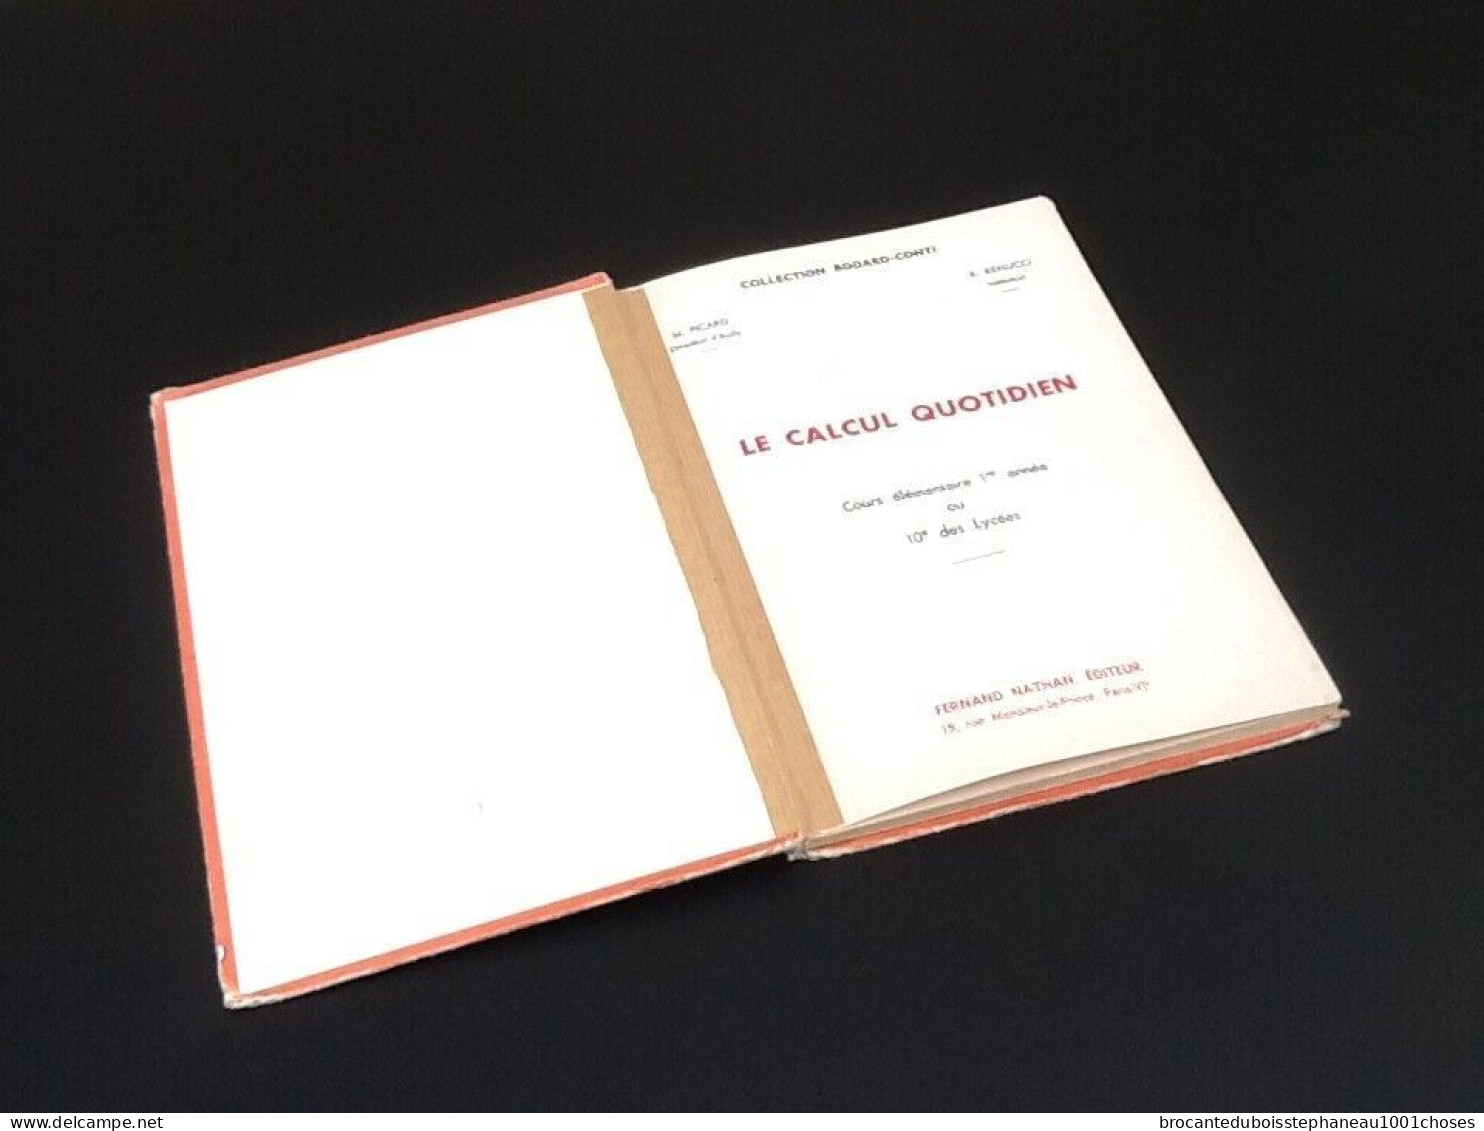 Collection Bodard / Conti  Le Calcul Quotidien   Cours Elémentaire 1ère Année  (1962) - Sciences